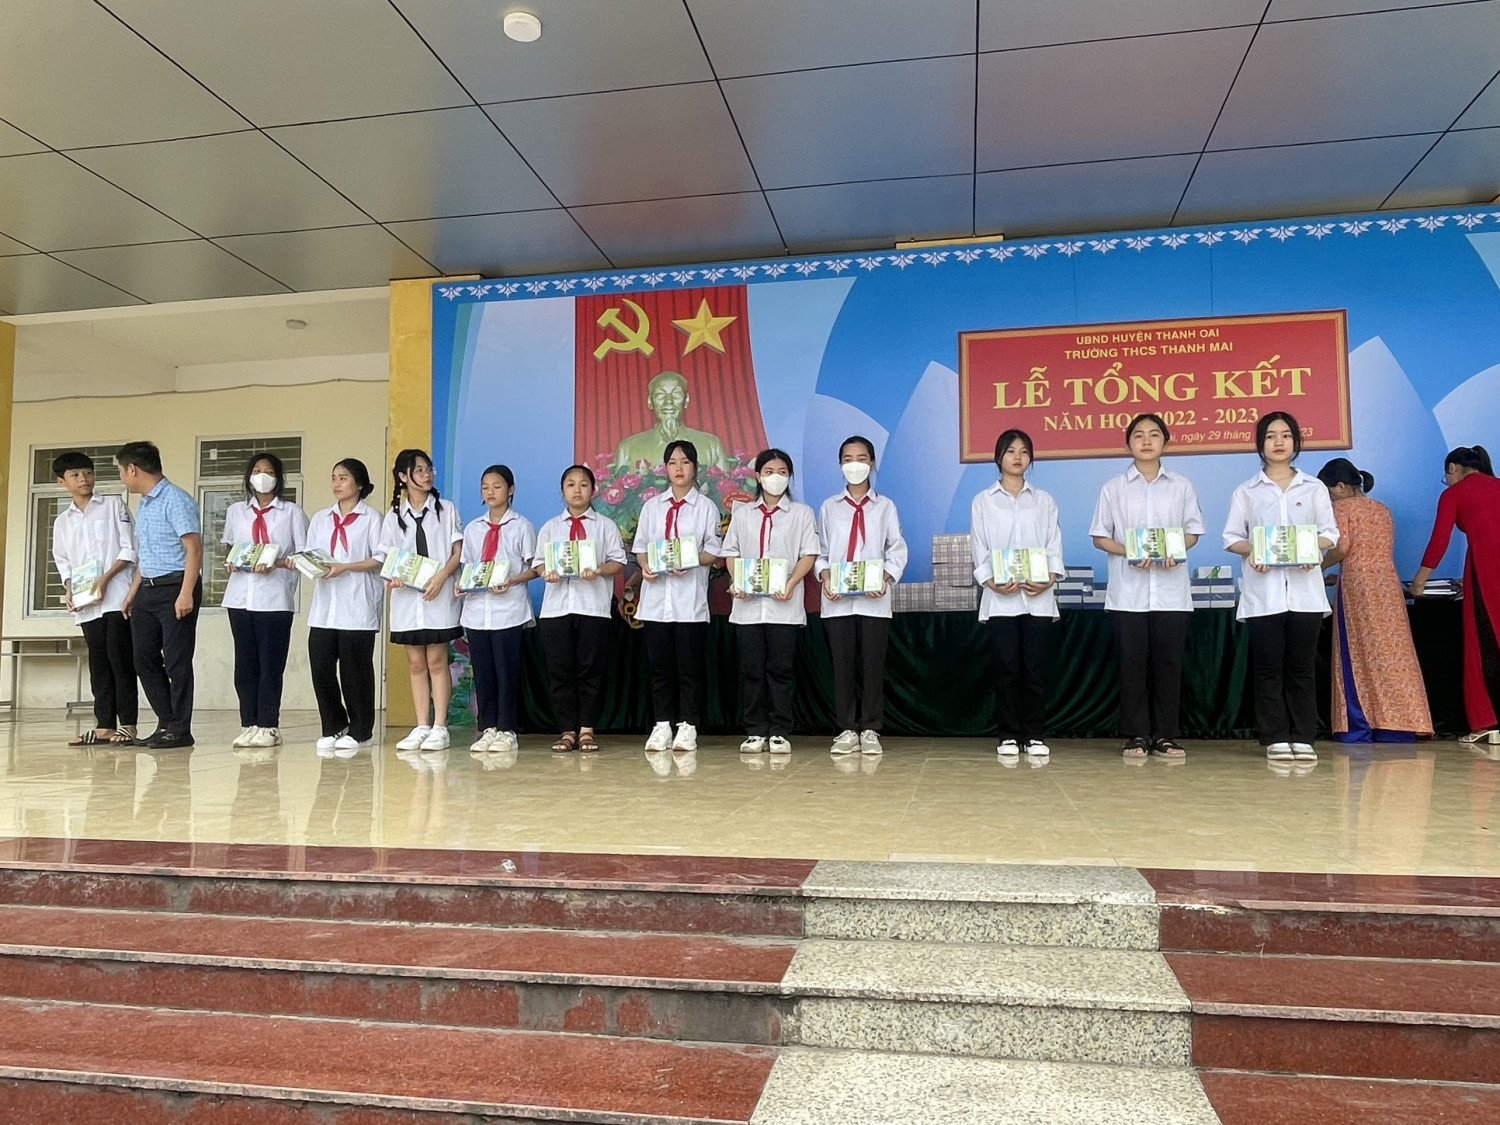 Ông Lã Văn Dũng - Phó chủ ticjg UBND xã Thanh Mai trao phần thưởng cho các em học sinh.